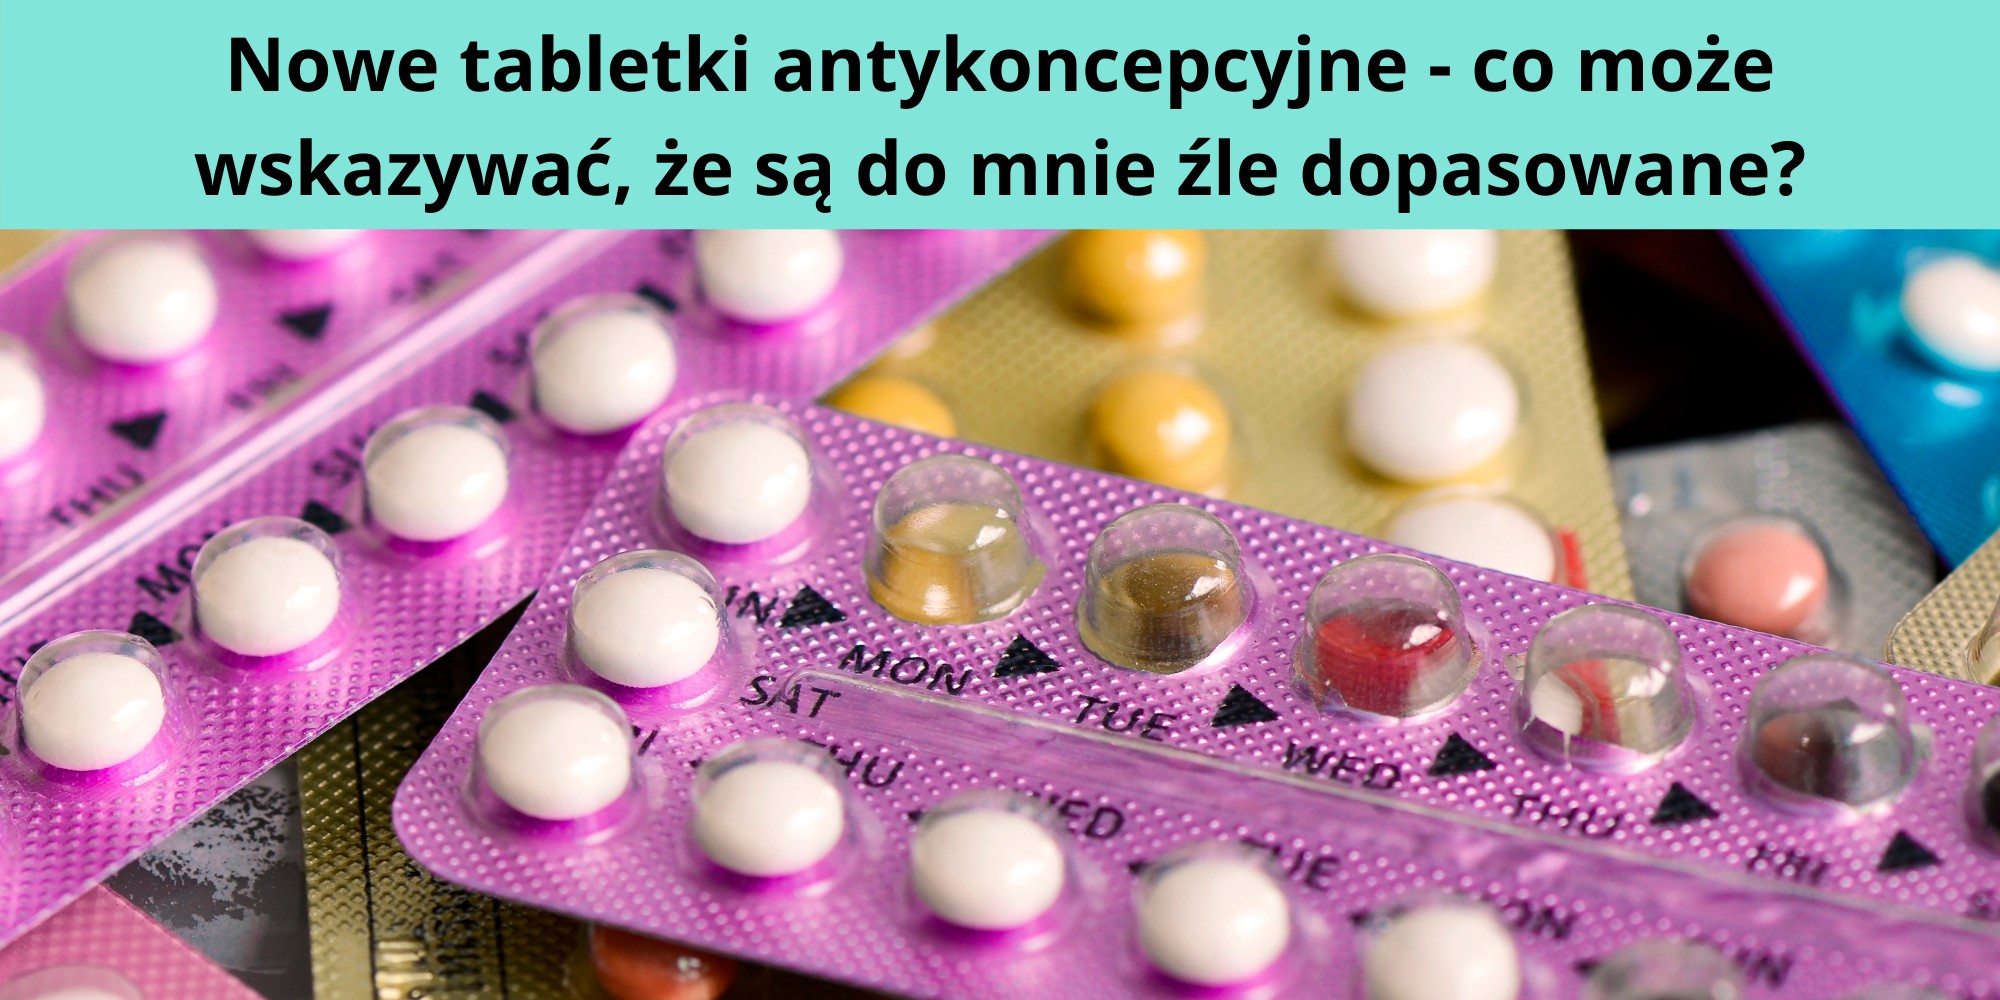 Nowe tabletki antykoncepcyjne - co może wskazywać, że są do mnie źle dopasowane?